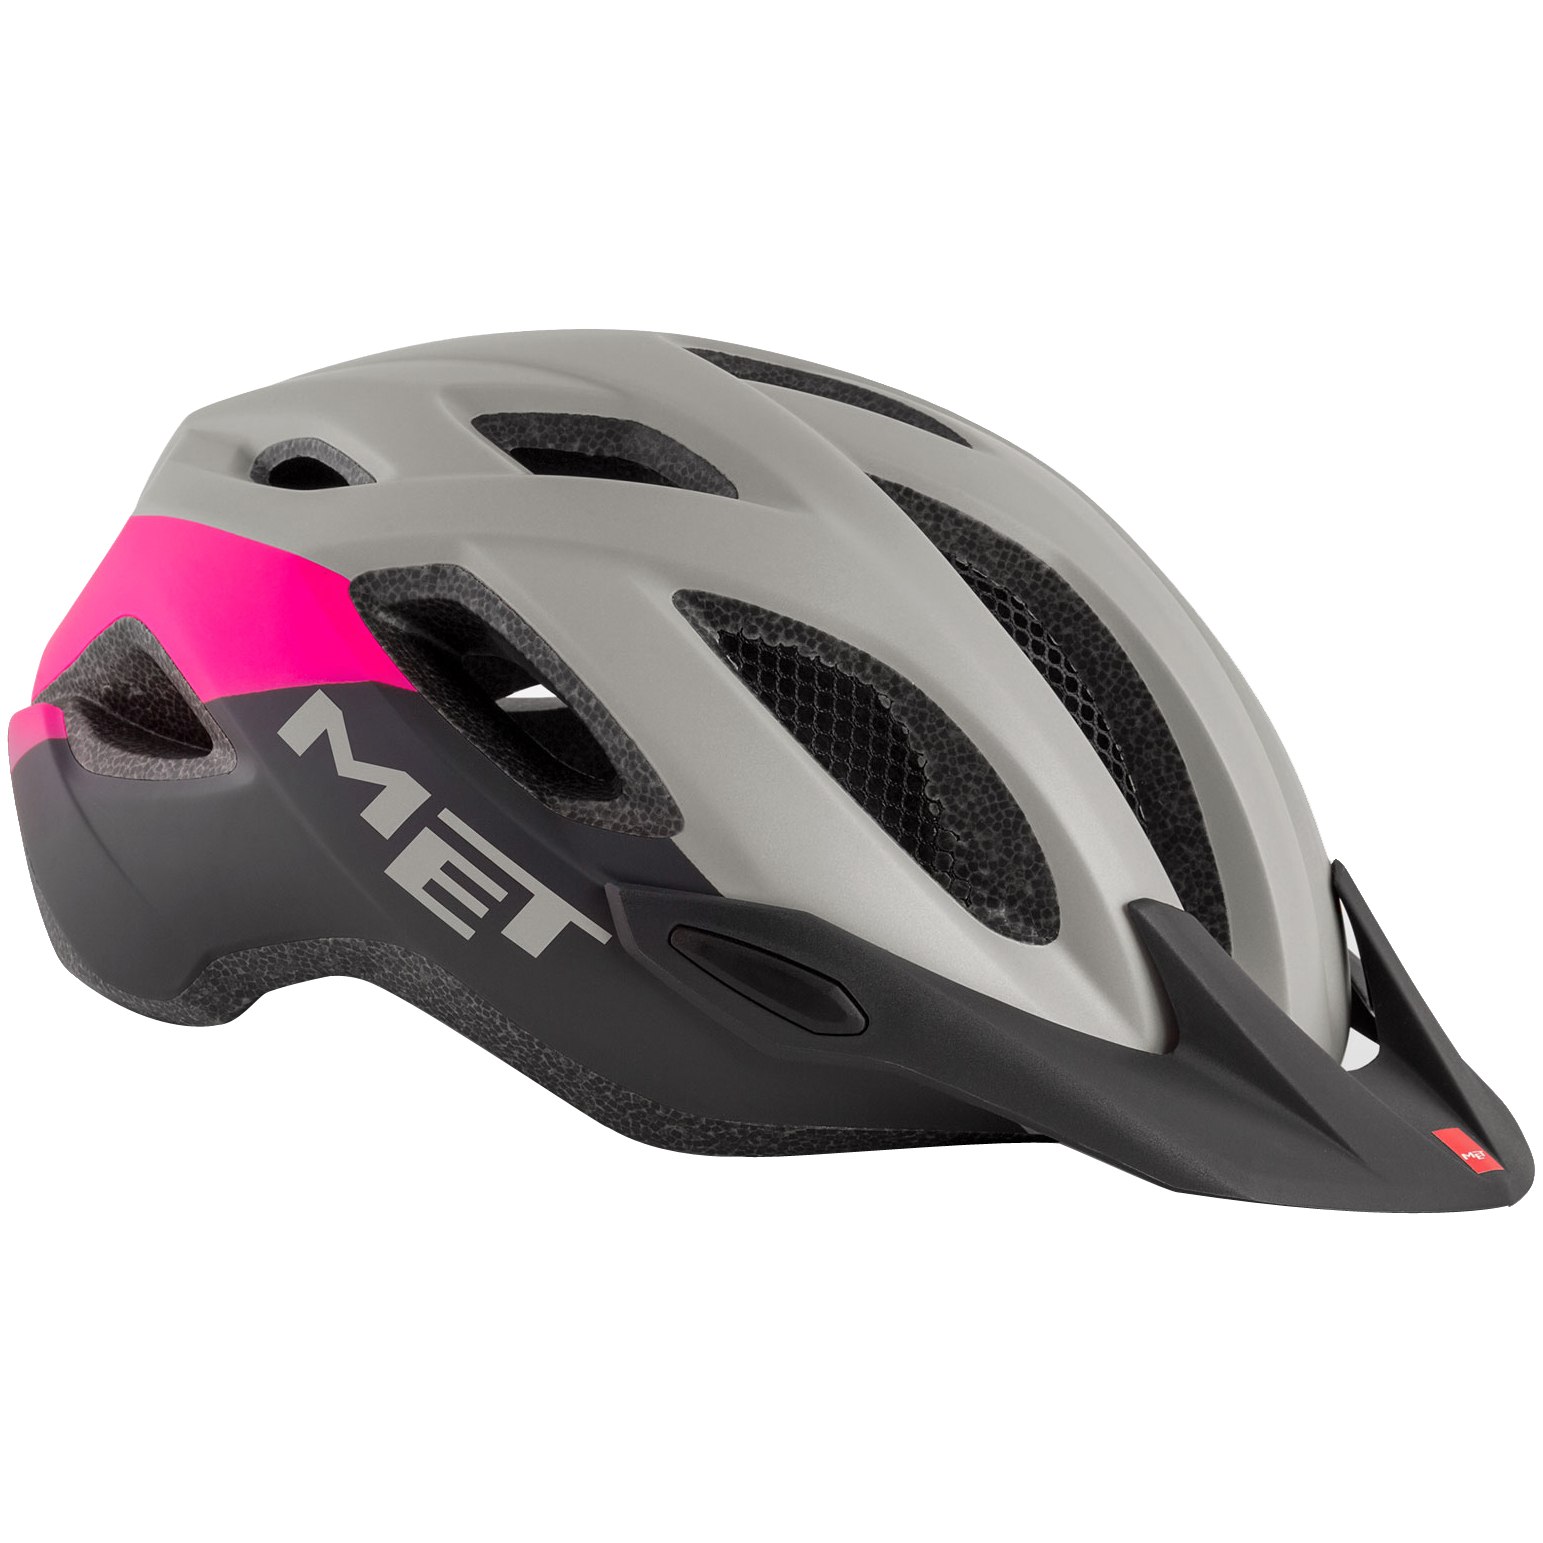 Productfoto van MET Crossover Helmet - Gray Pink Matt